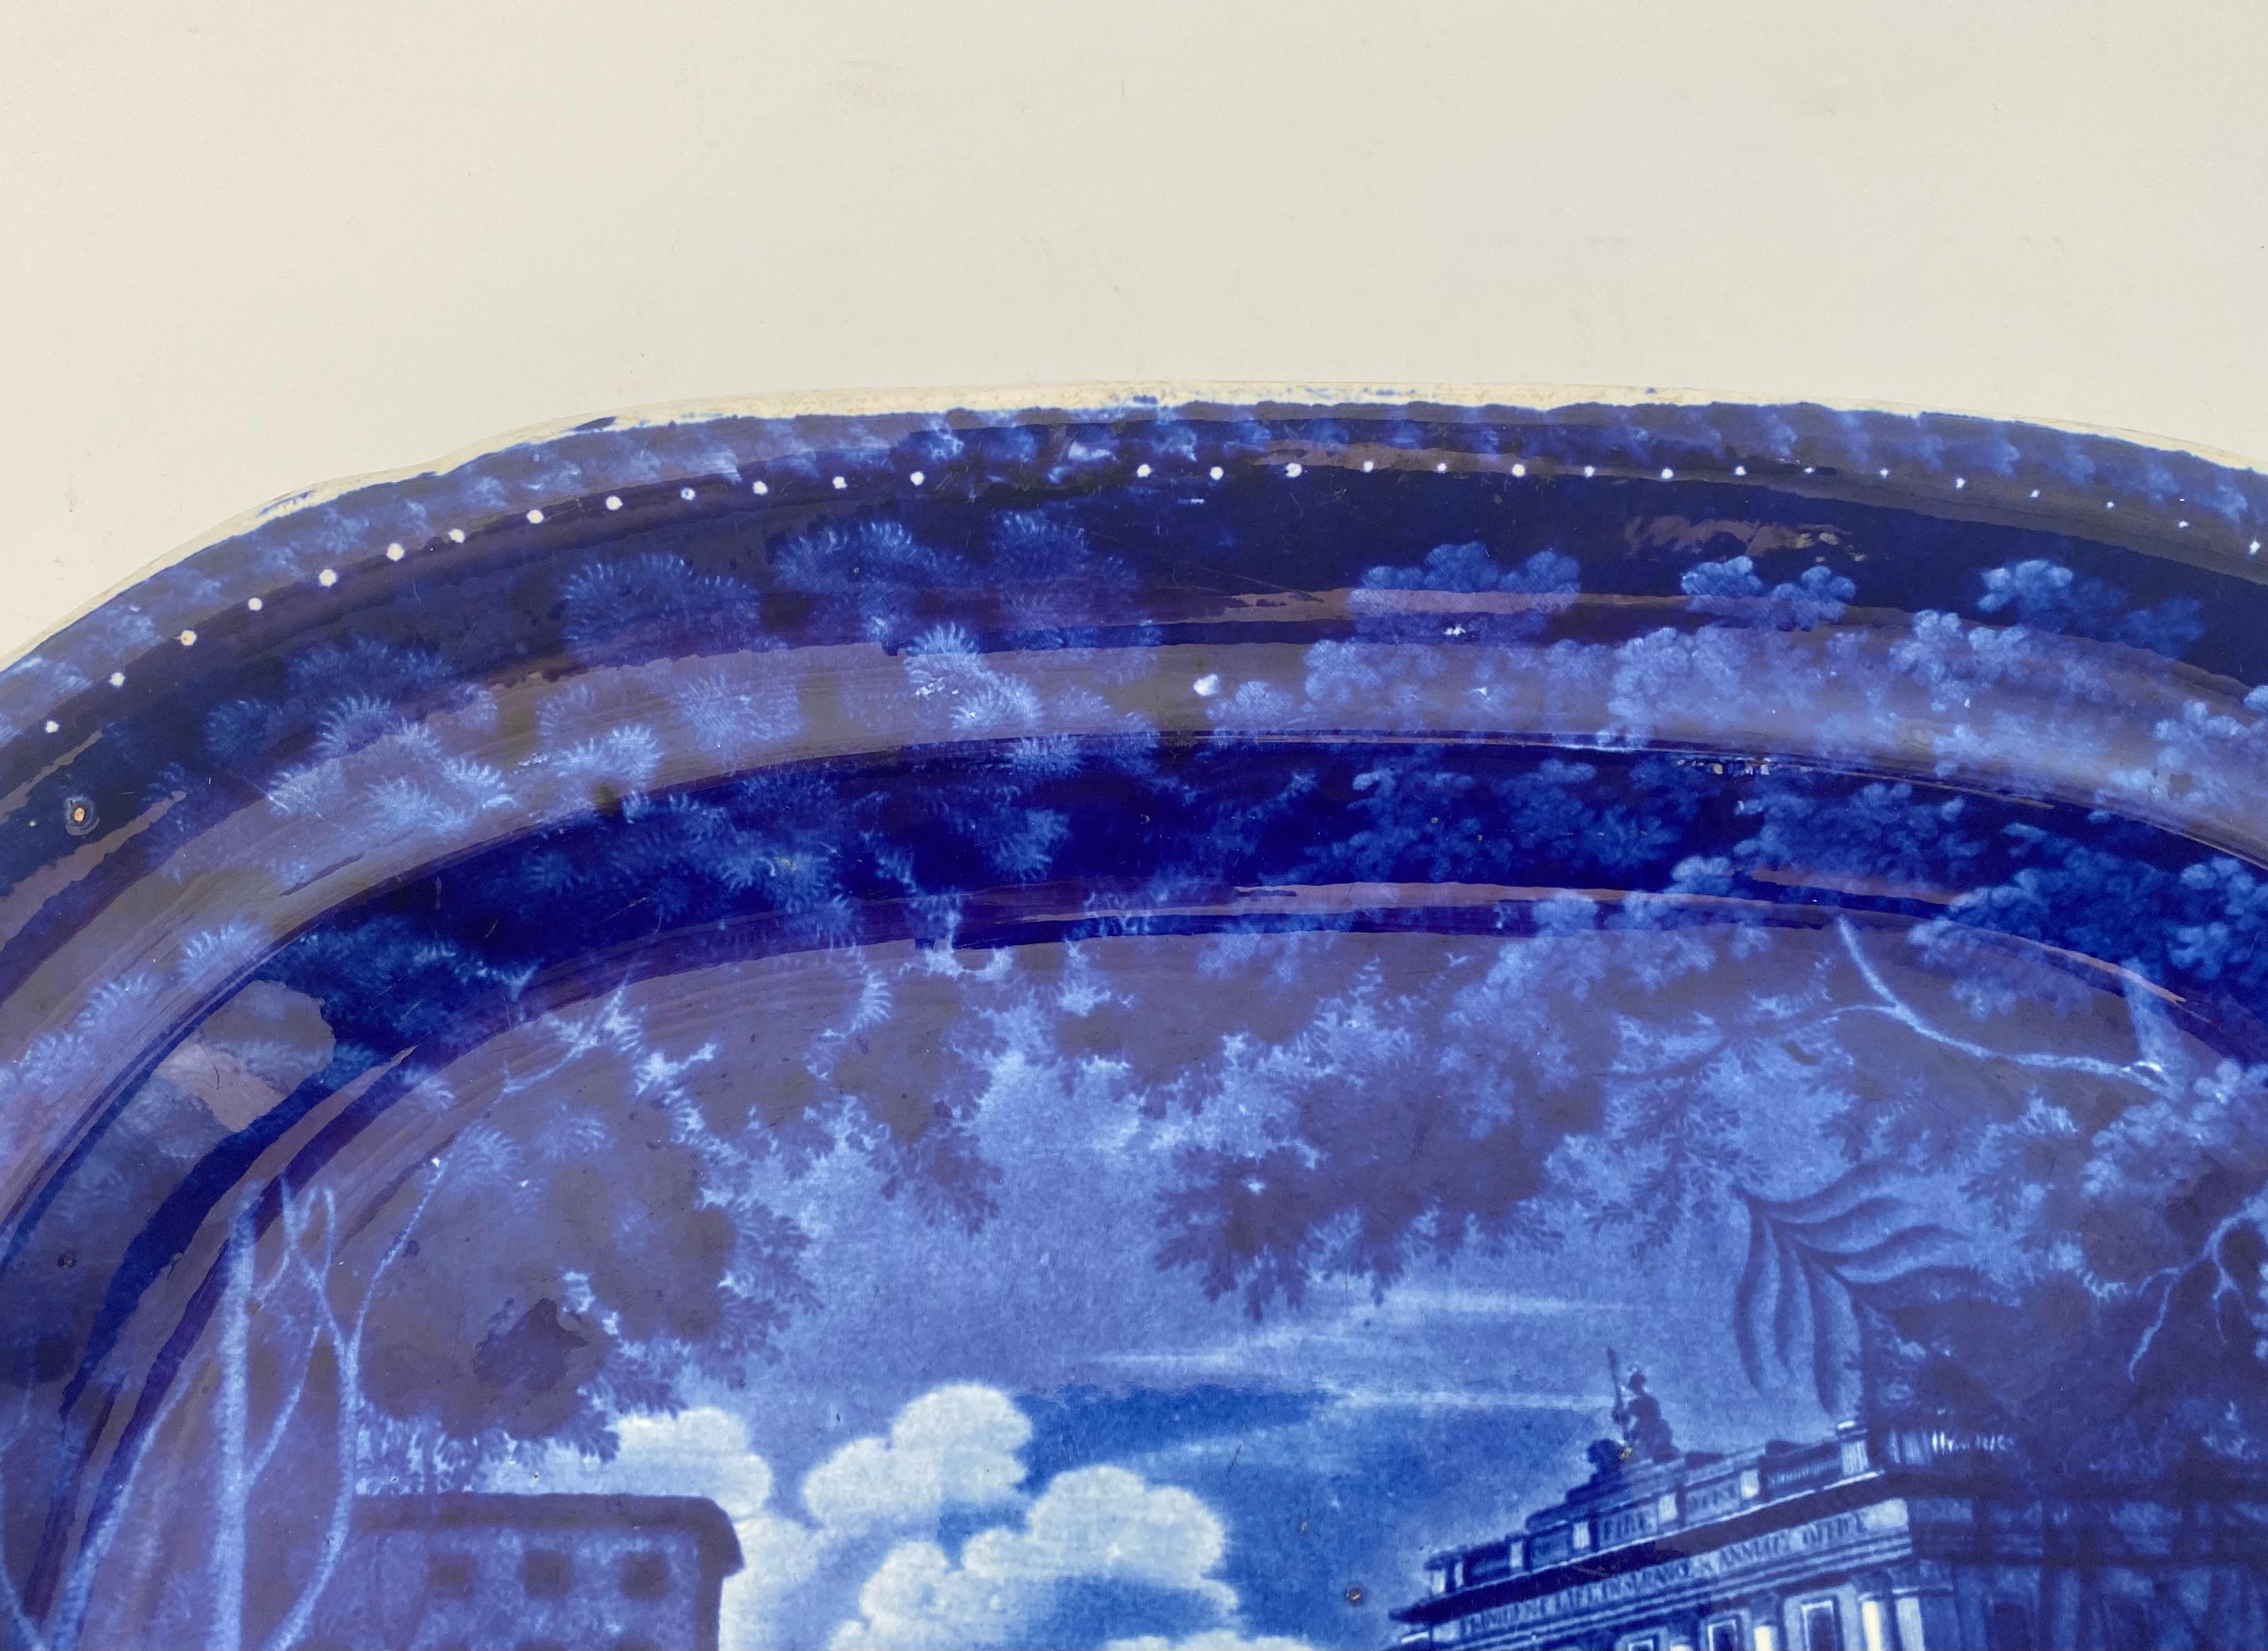 Fleischteller aus Staffordshire-Keramik, Adams Pottery, um 1830. Gedruckt in Unterglasurblau, mit einer betitelten Szene des 